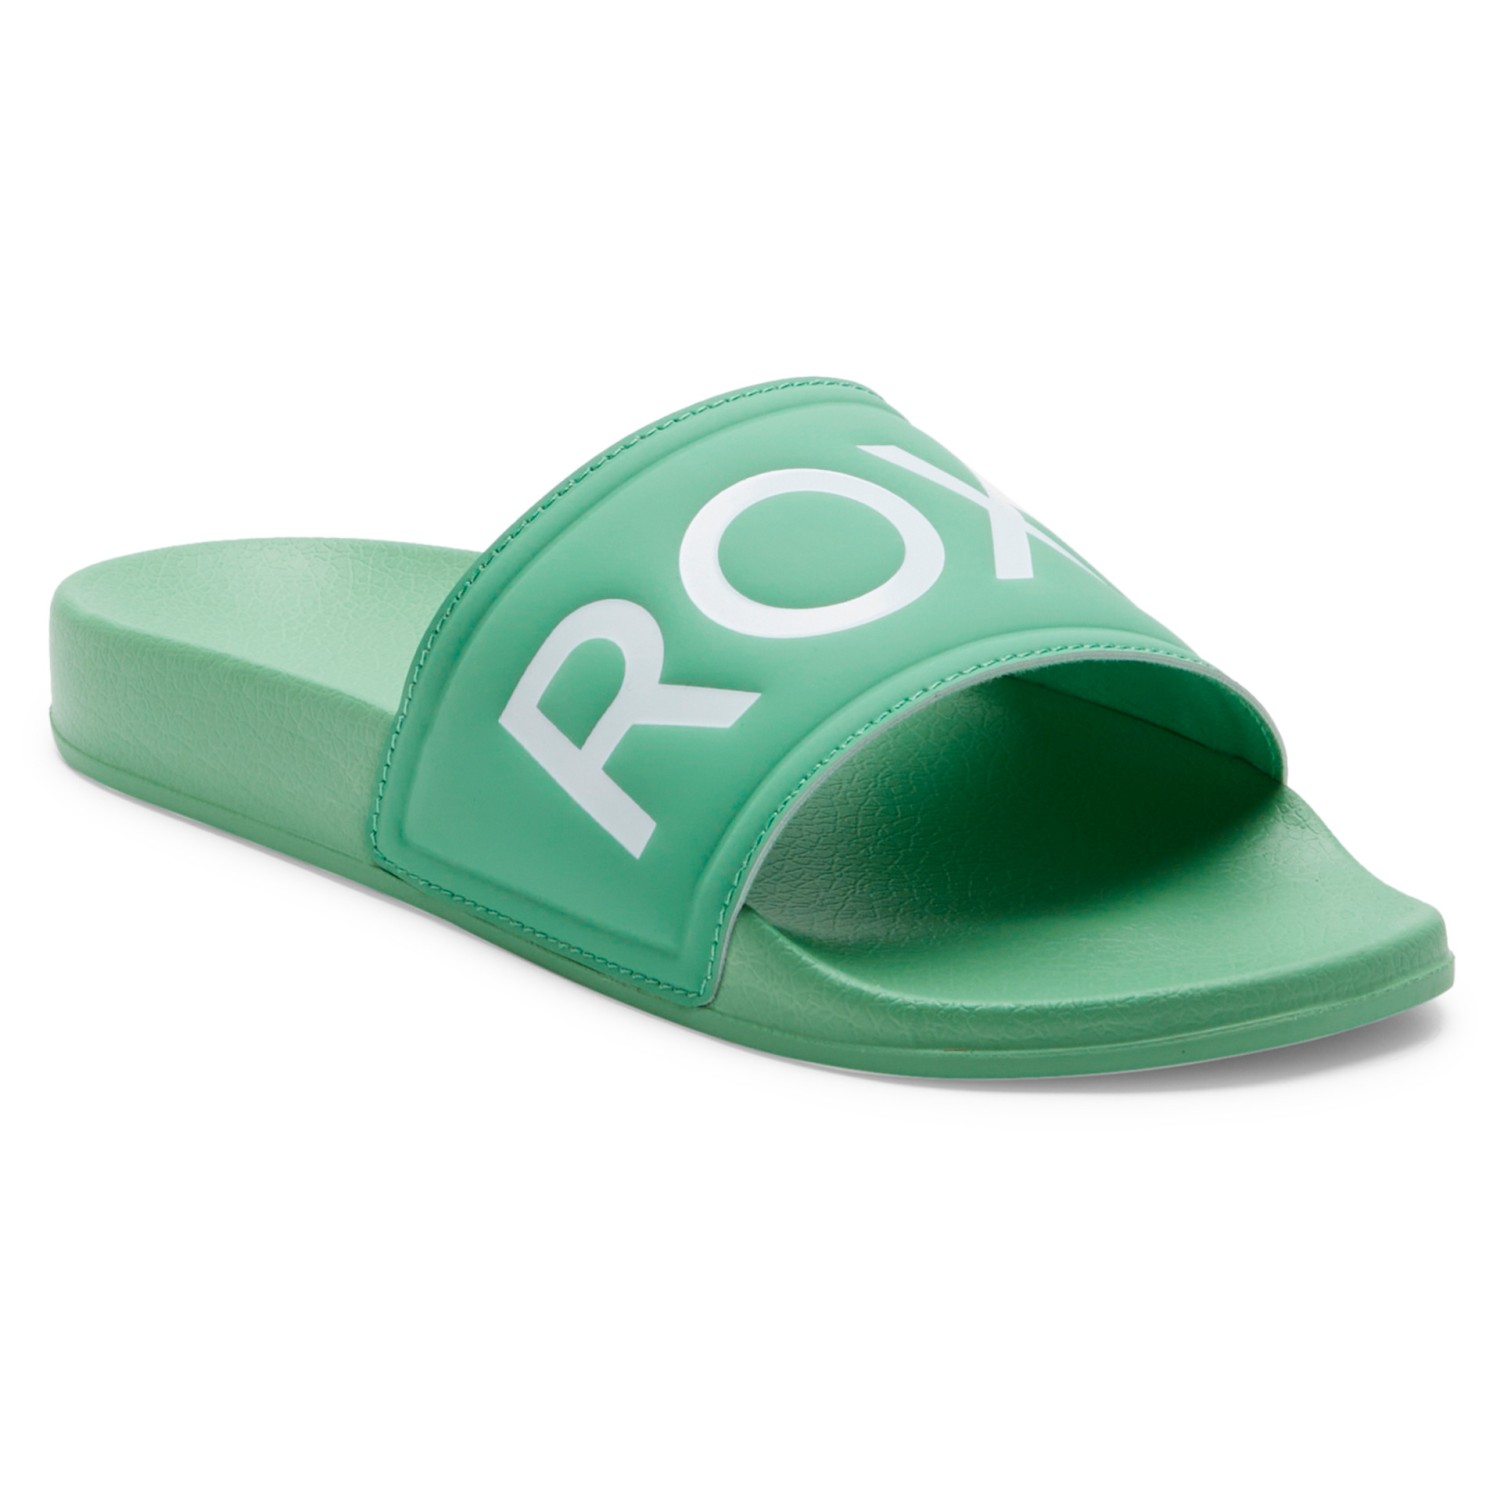 Сандалии Roxy Women's Slippy Sandals, зеленый